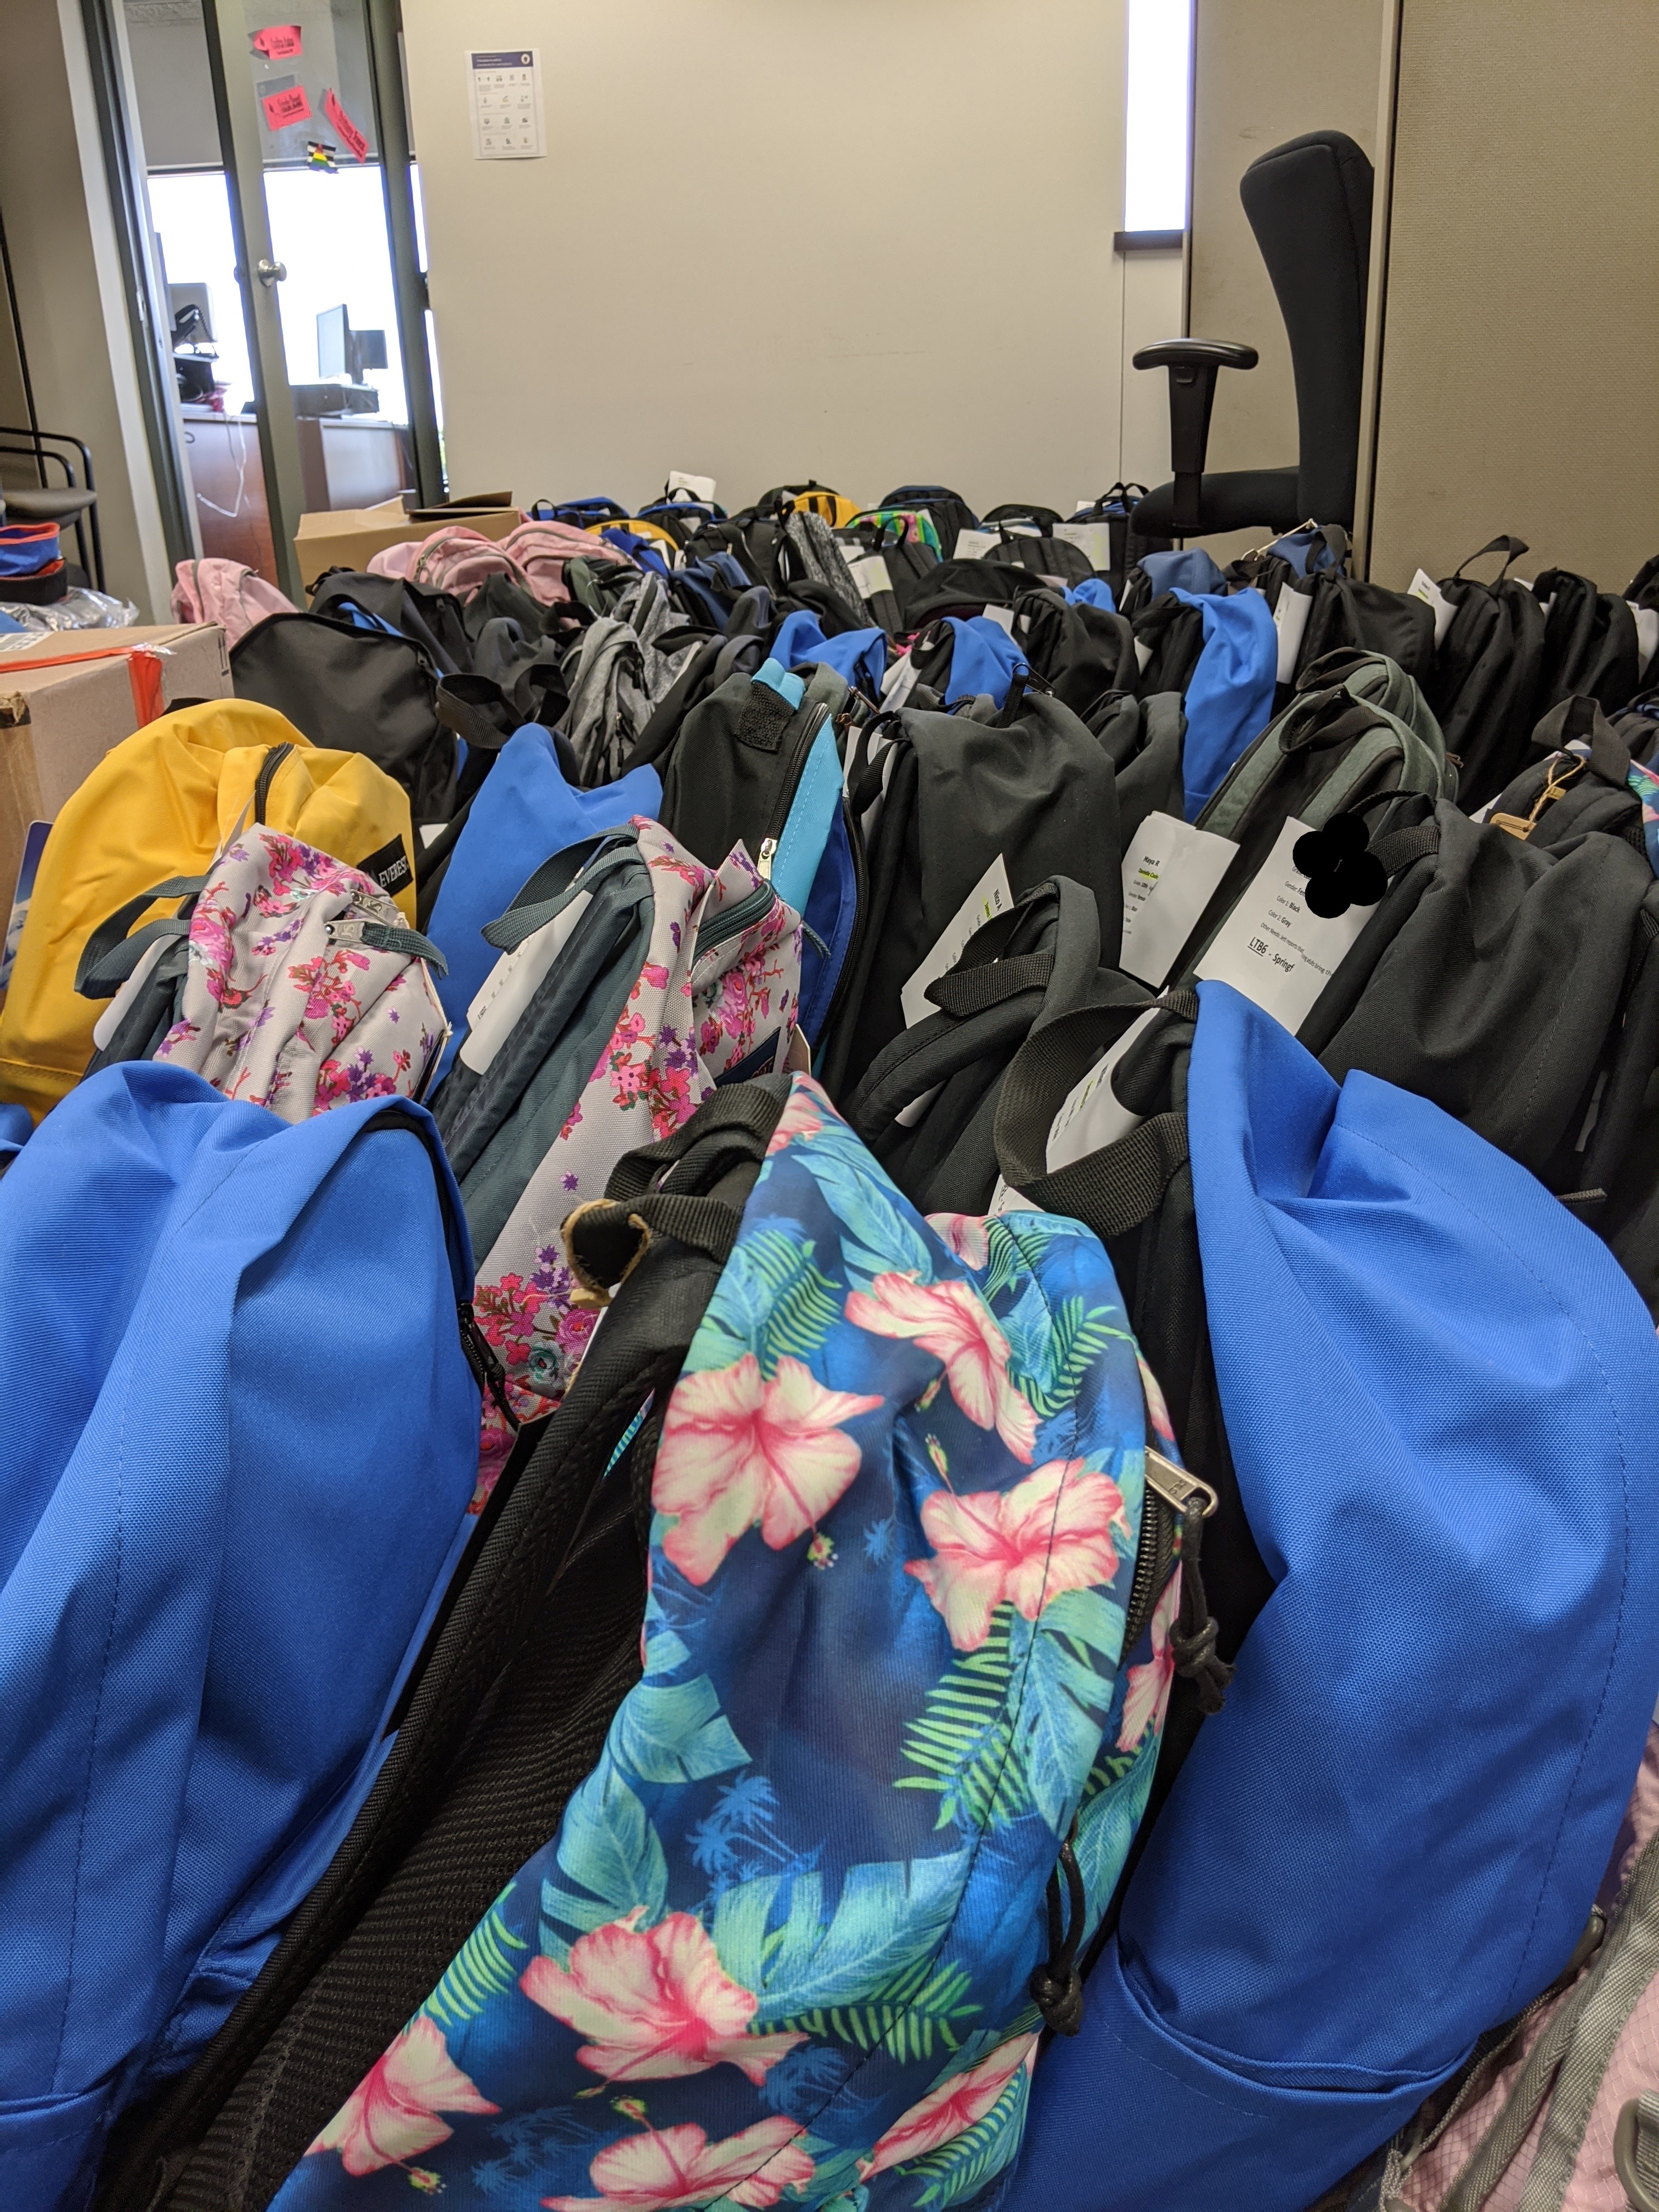 rows of backpacks